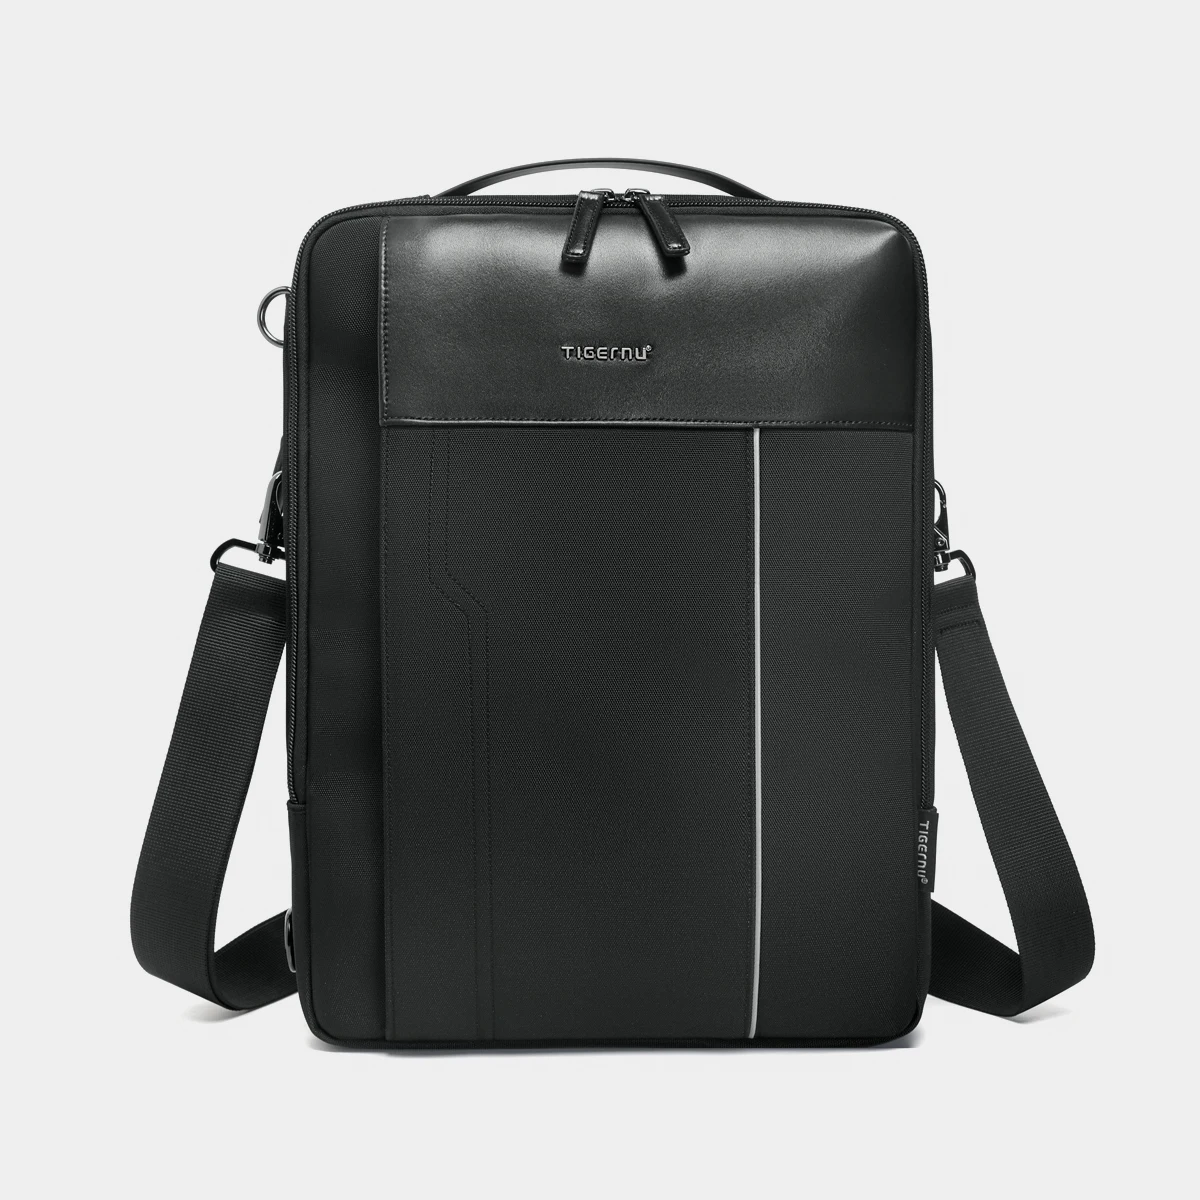 Lifetime Warranty Shoulder Bag For Men 13.3inch Tablet Bag Men Crossbody... - $146.86